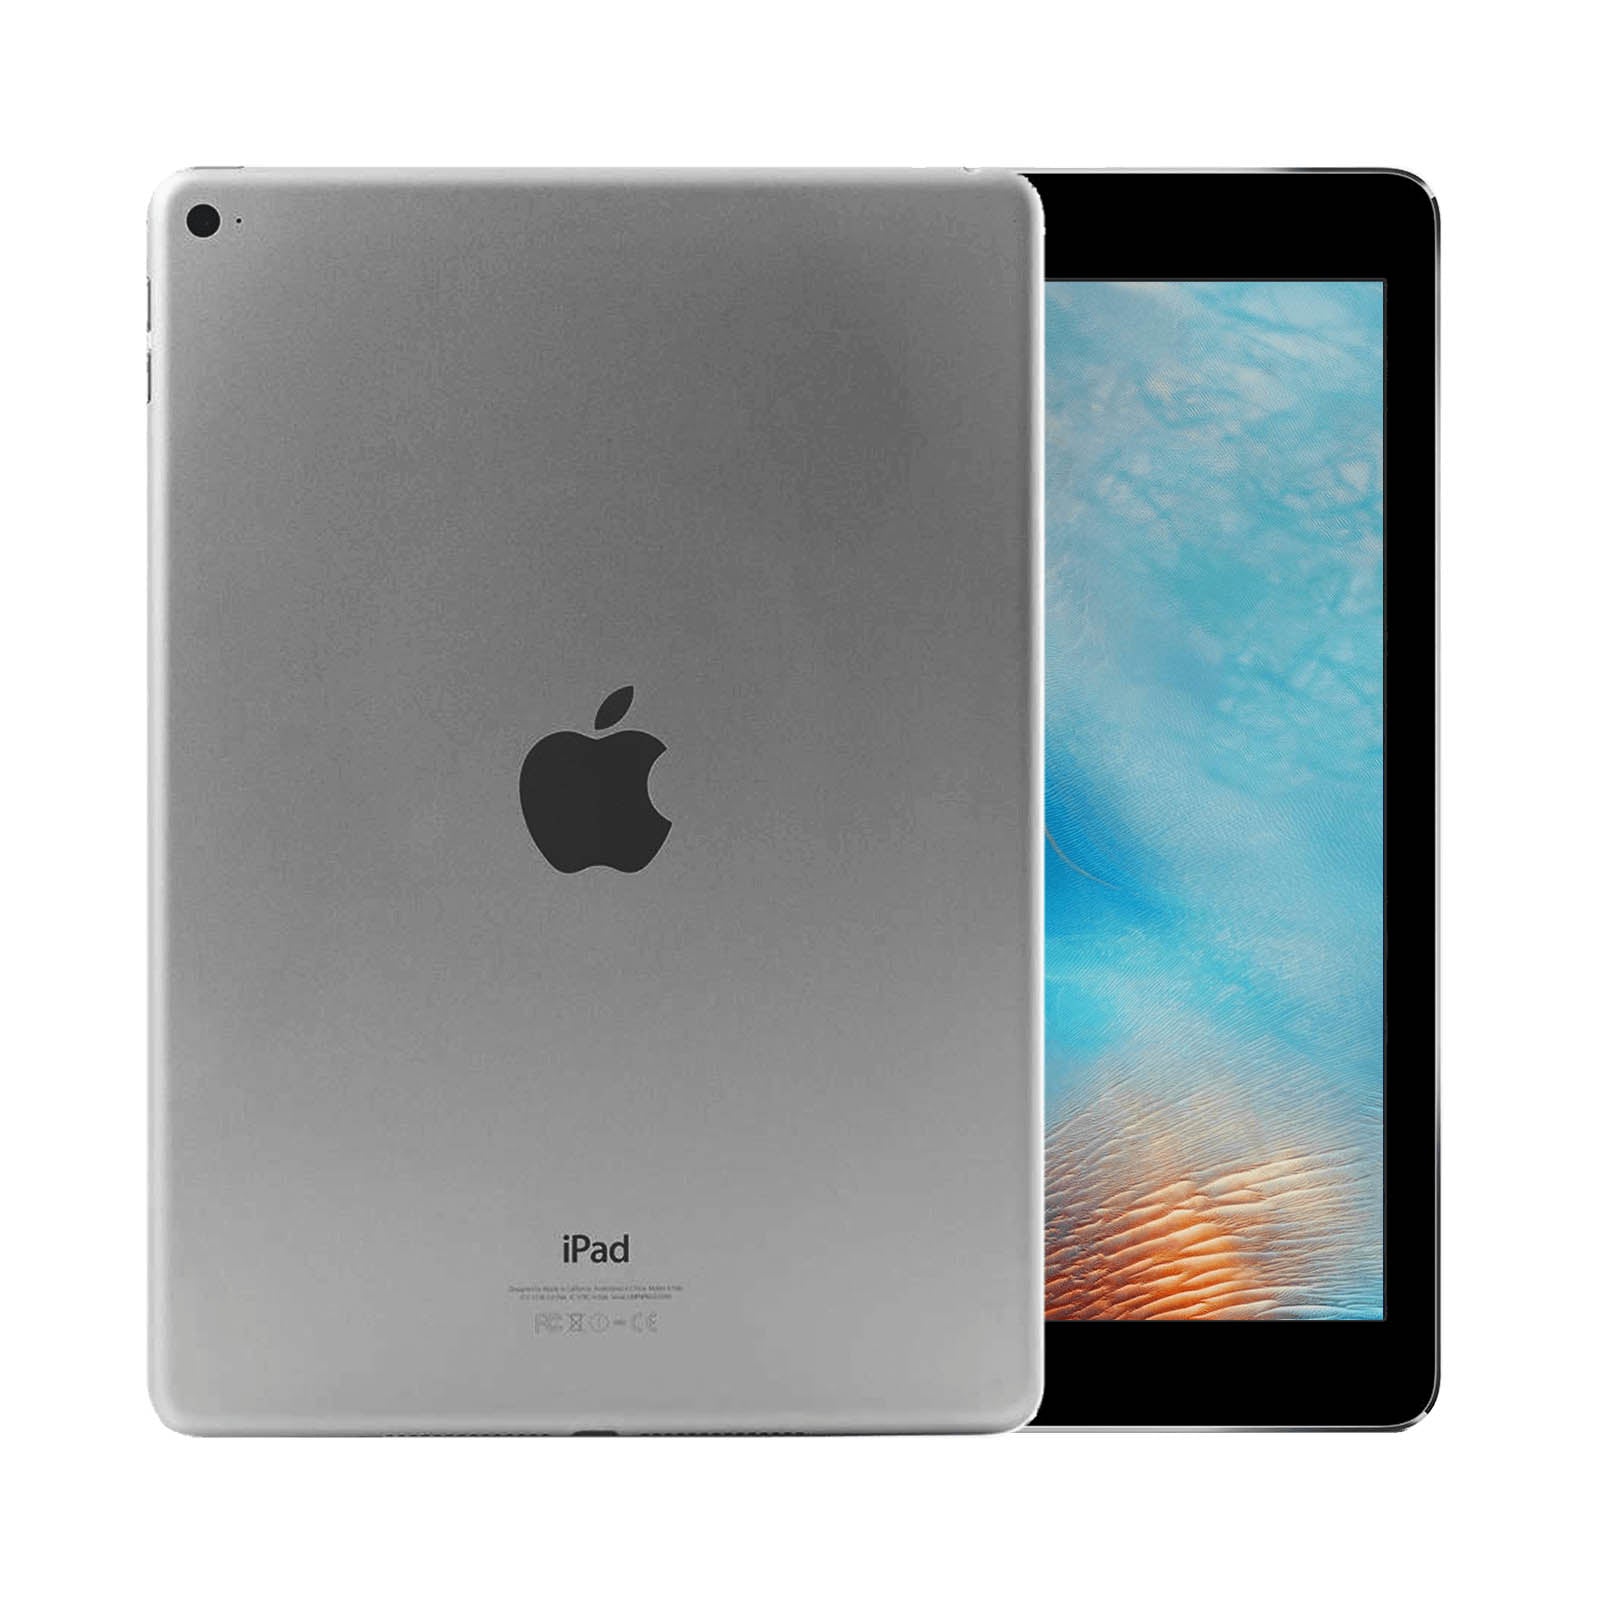 Apple iPad Air 2 32GB WiFi - Space Grey – Loop Mobile - AU